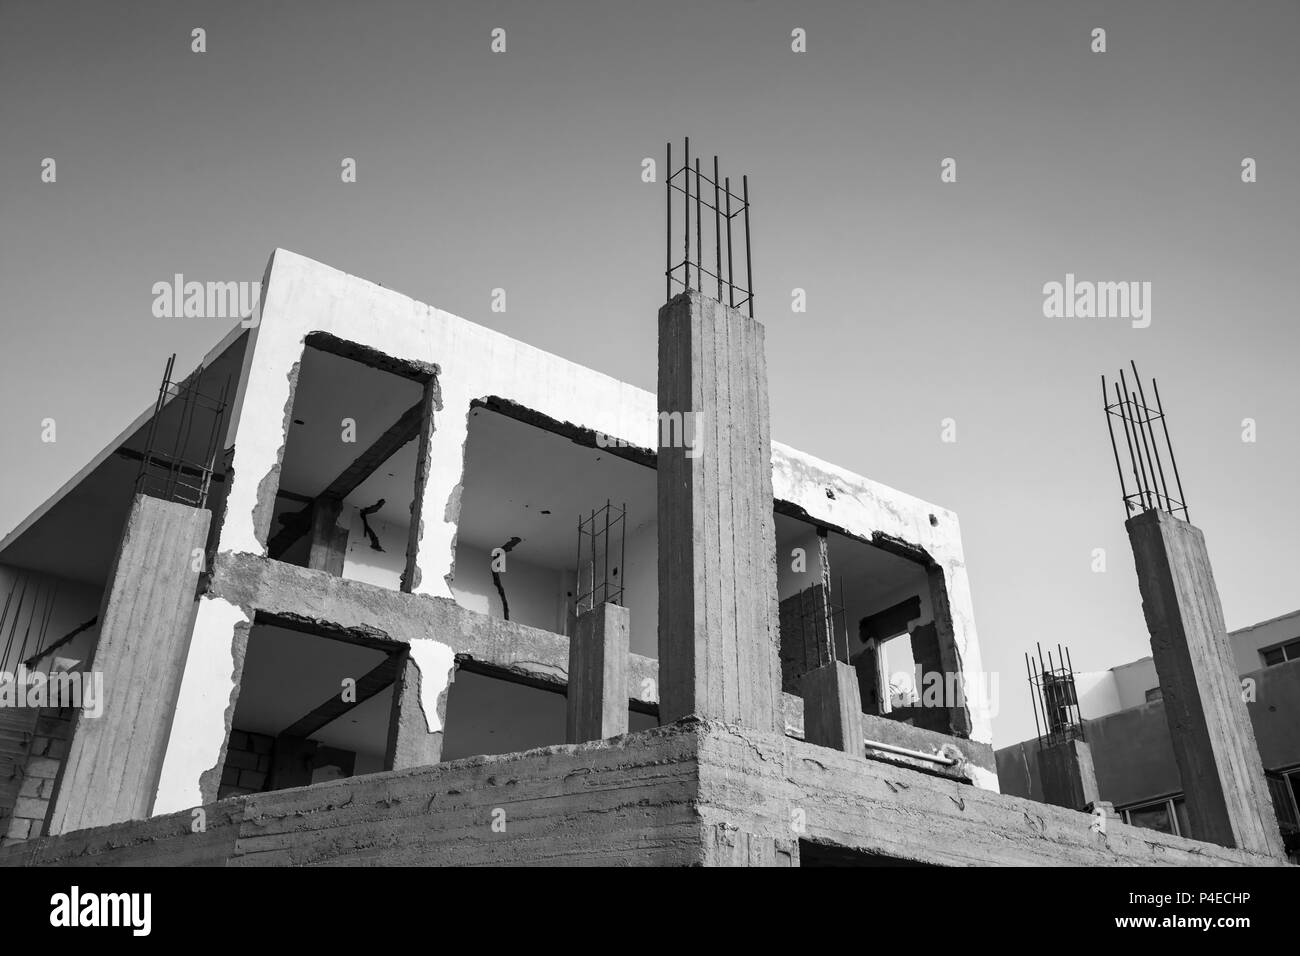 Bâtiment en béton est en construction, photo en noir et blanc Banque D'Images